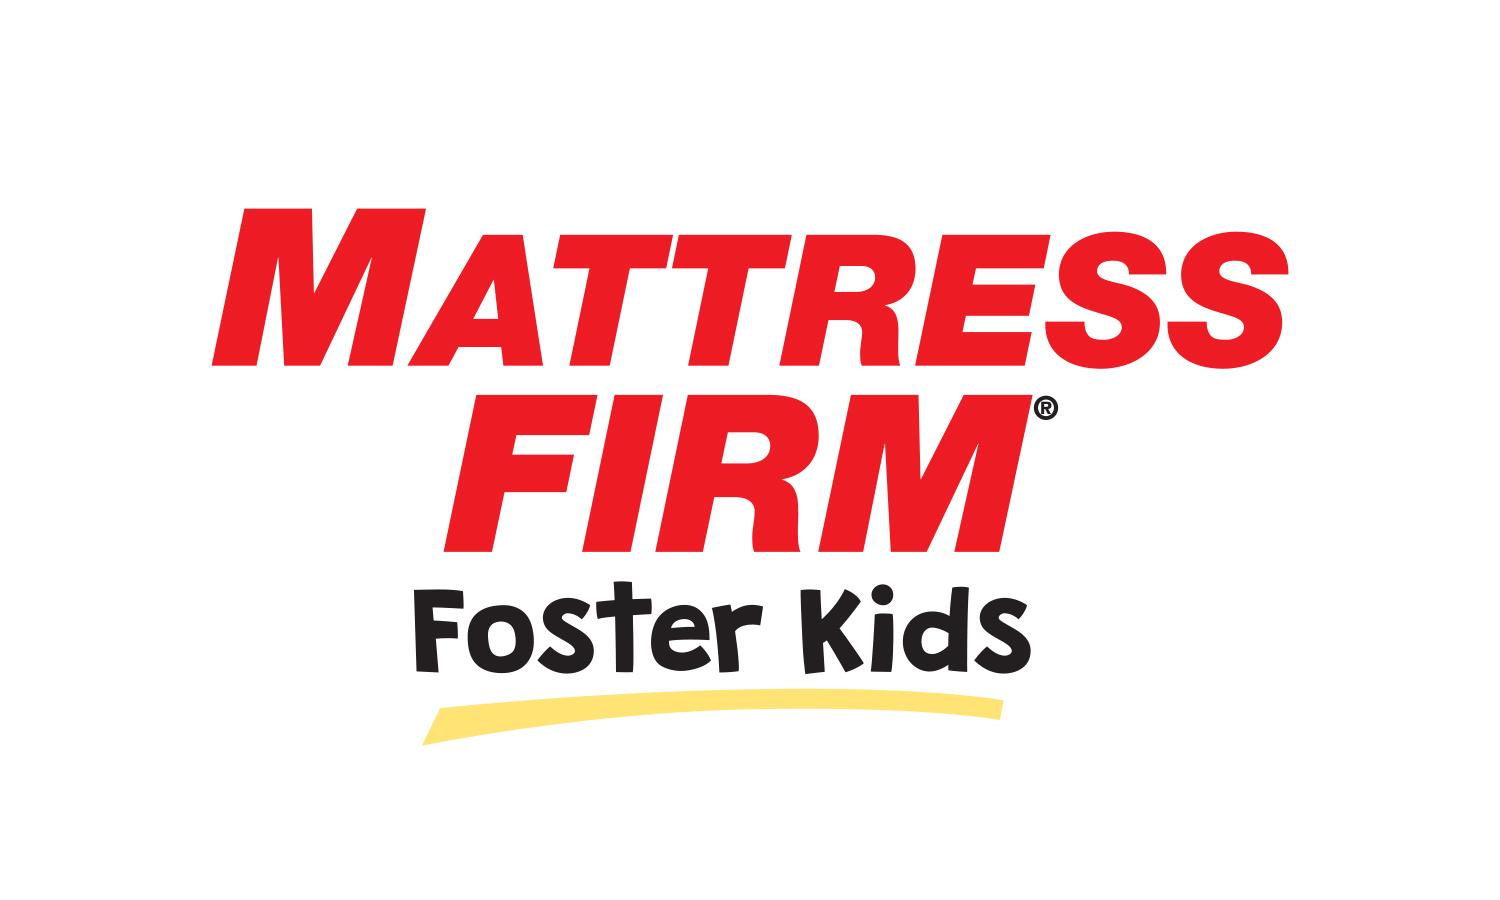 mattress firm foster kids org